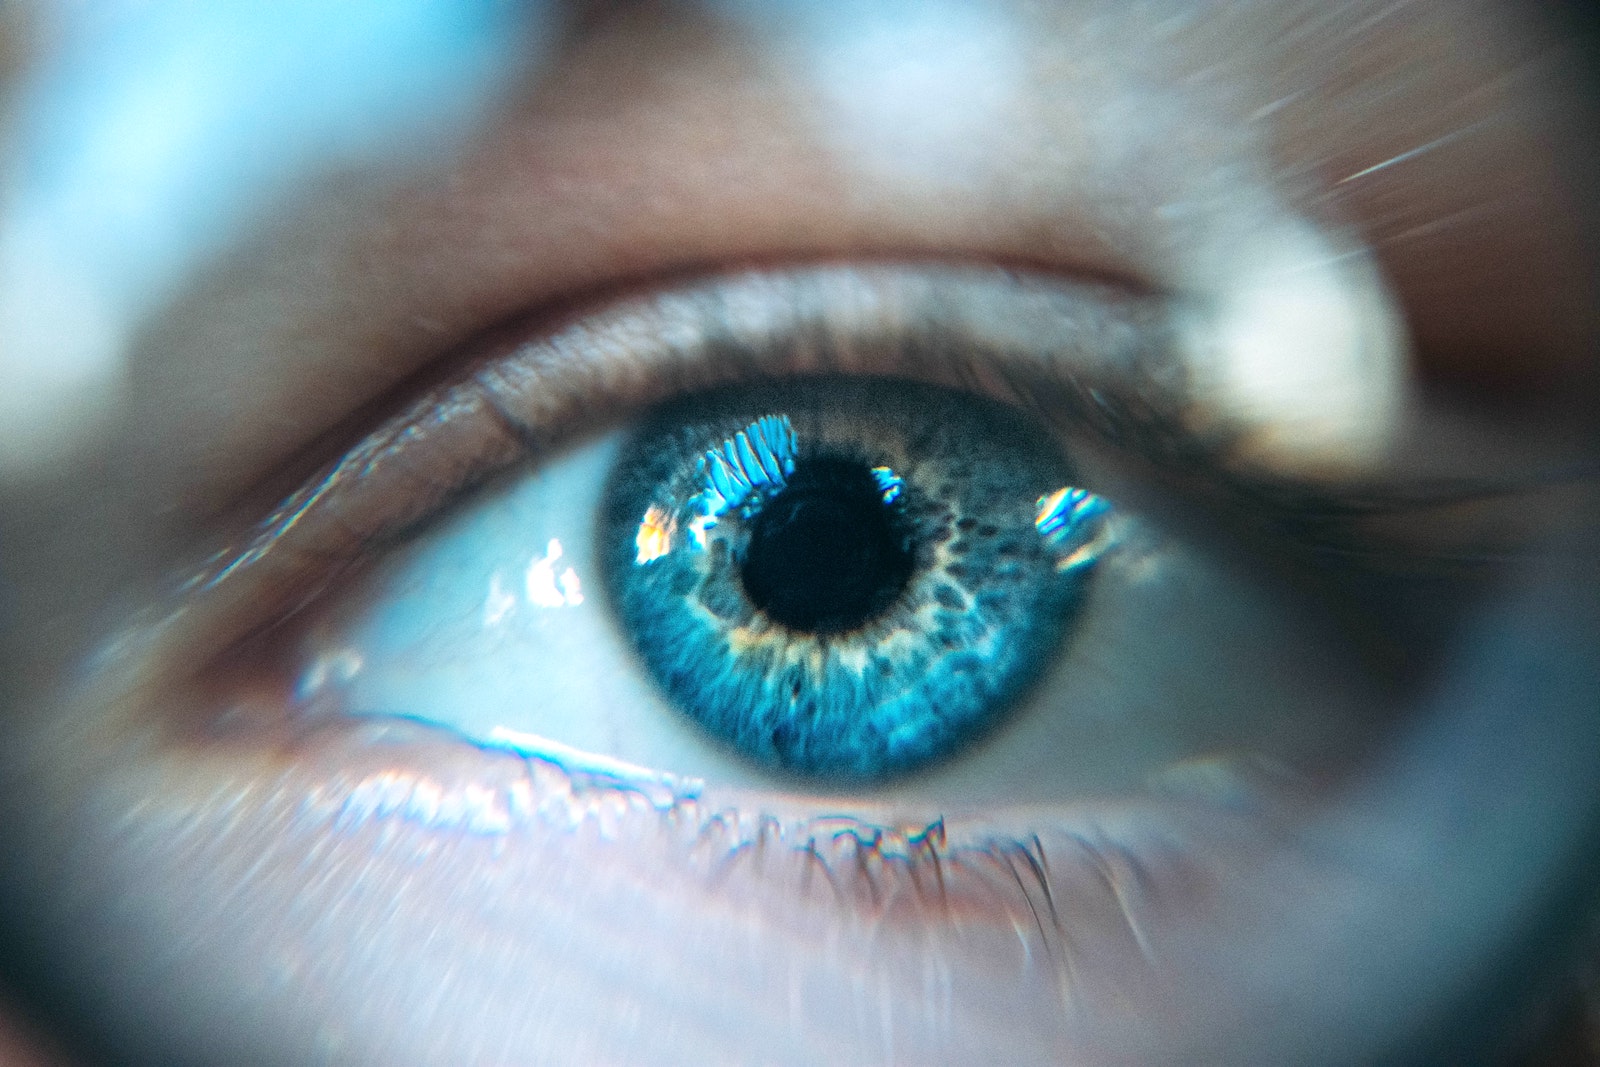 simptome tensiune oculara mare îmbunătățiți viziunea împreună